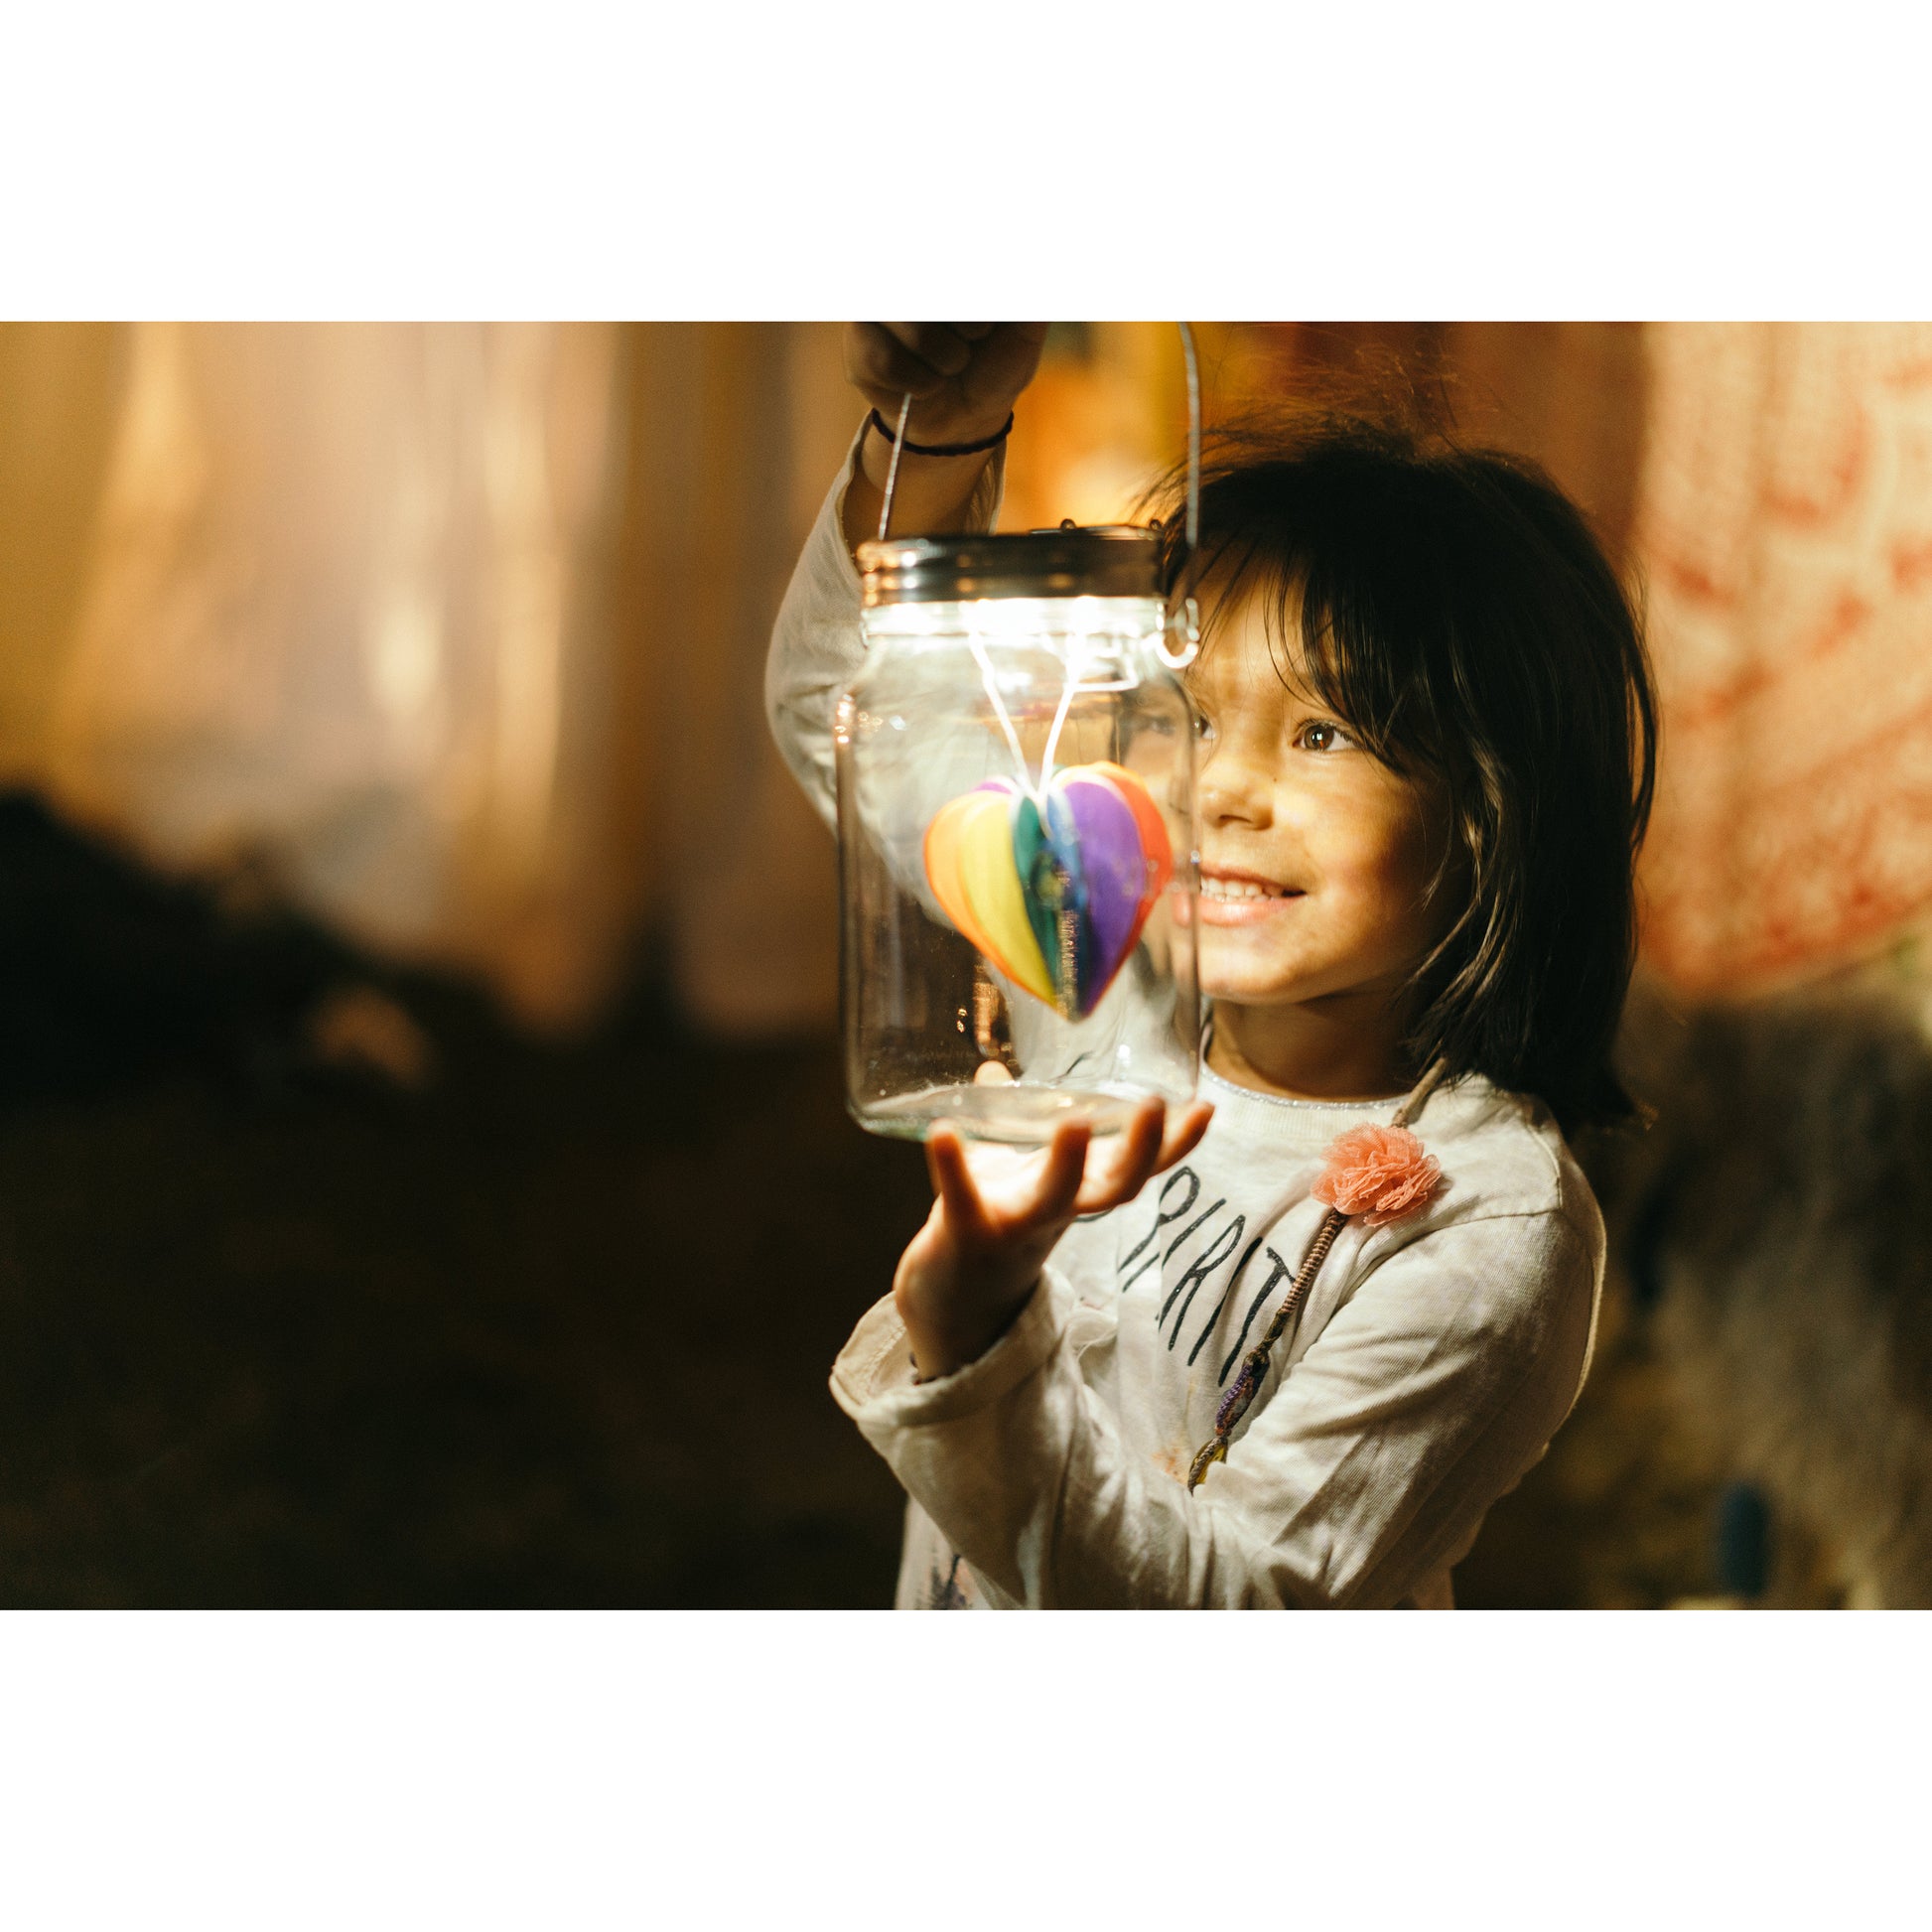 foto von einem kind mit der solarleuchte von sonnenglas mit dekoration im glas